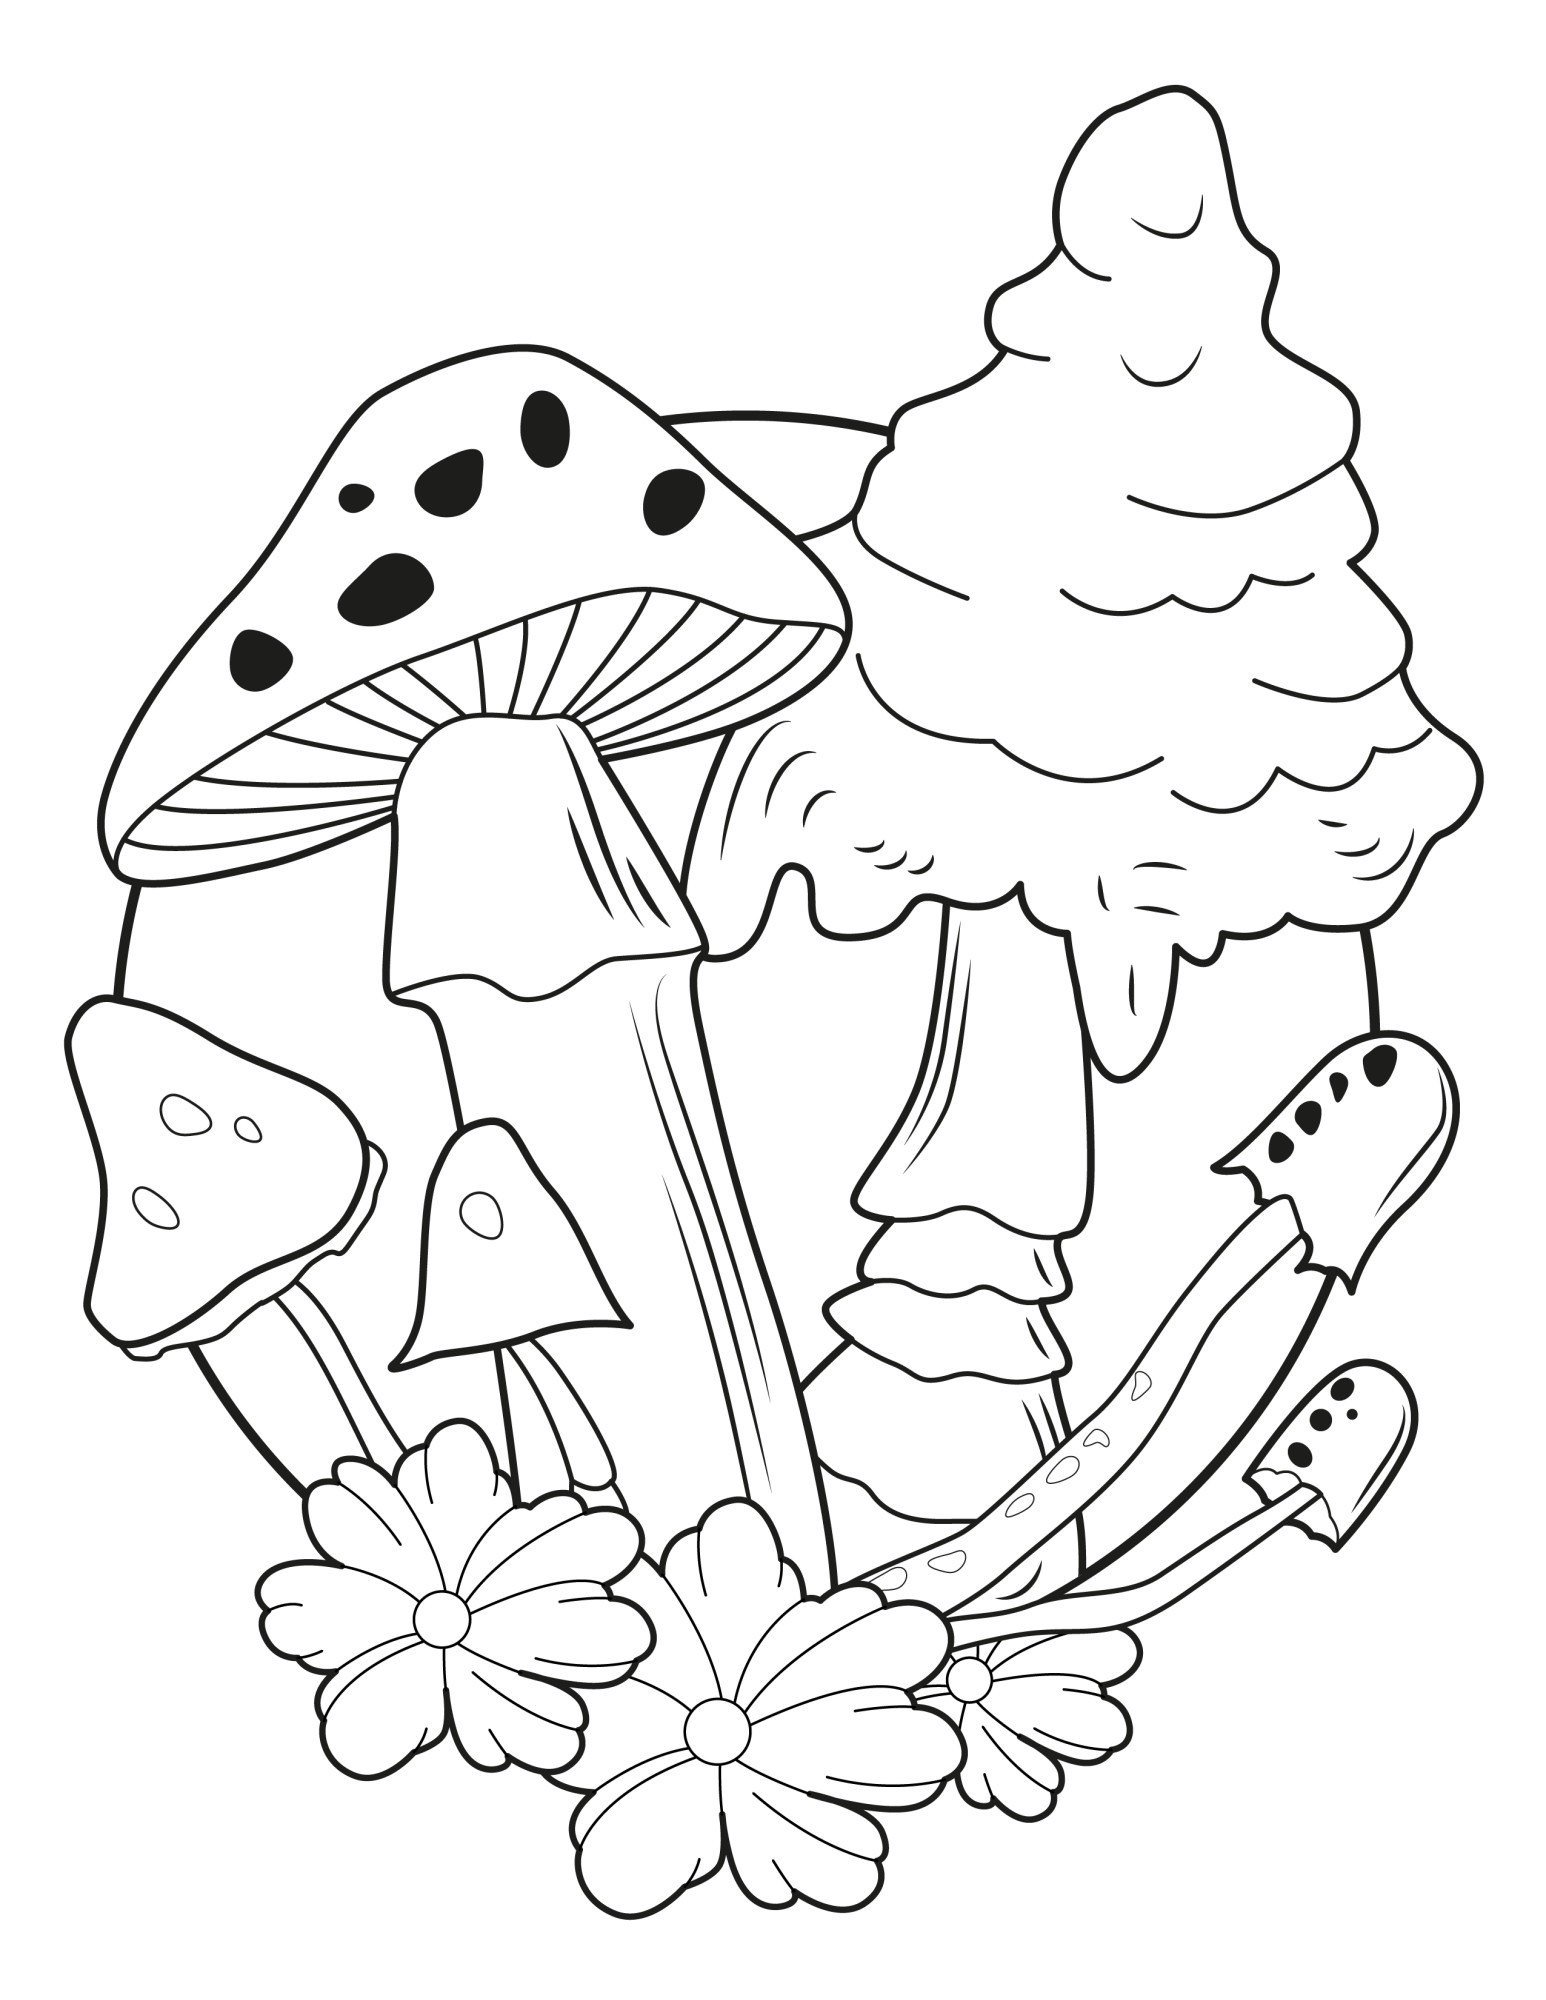 Раскраска для детей: грибы поганки в лесу